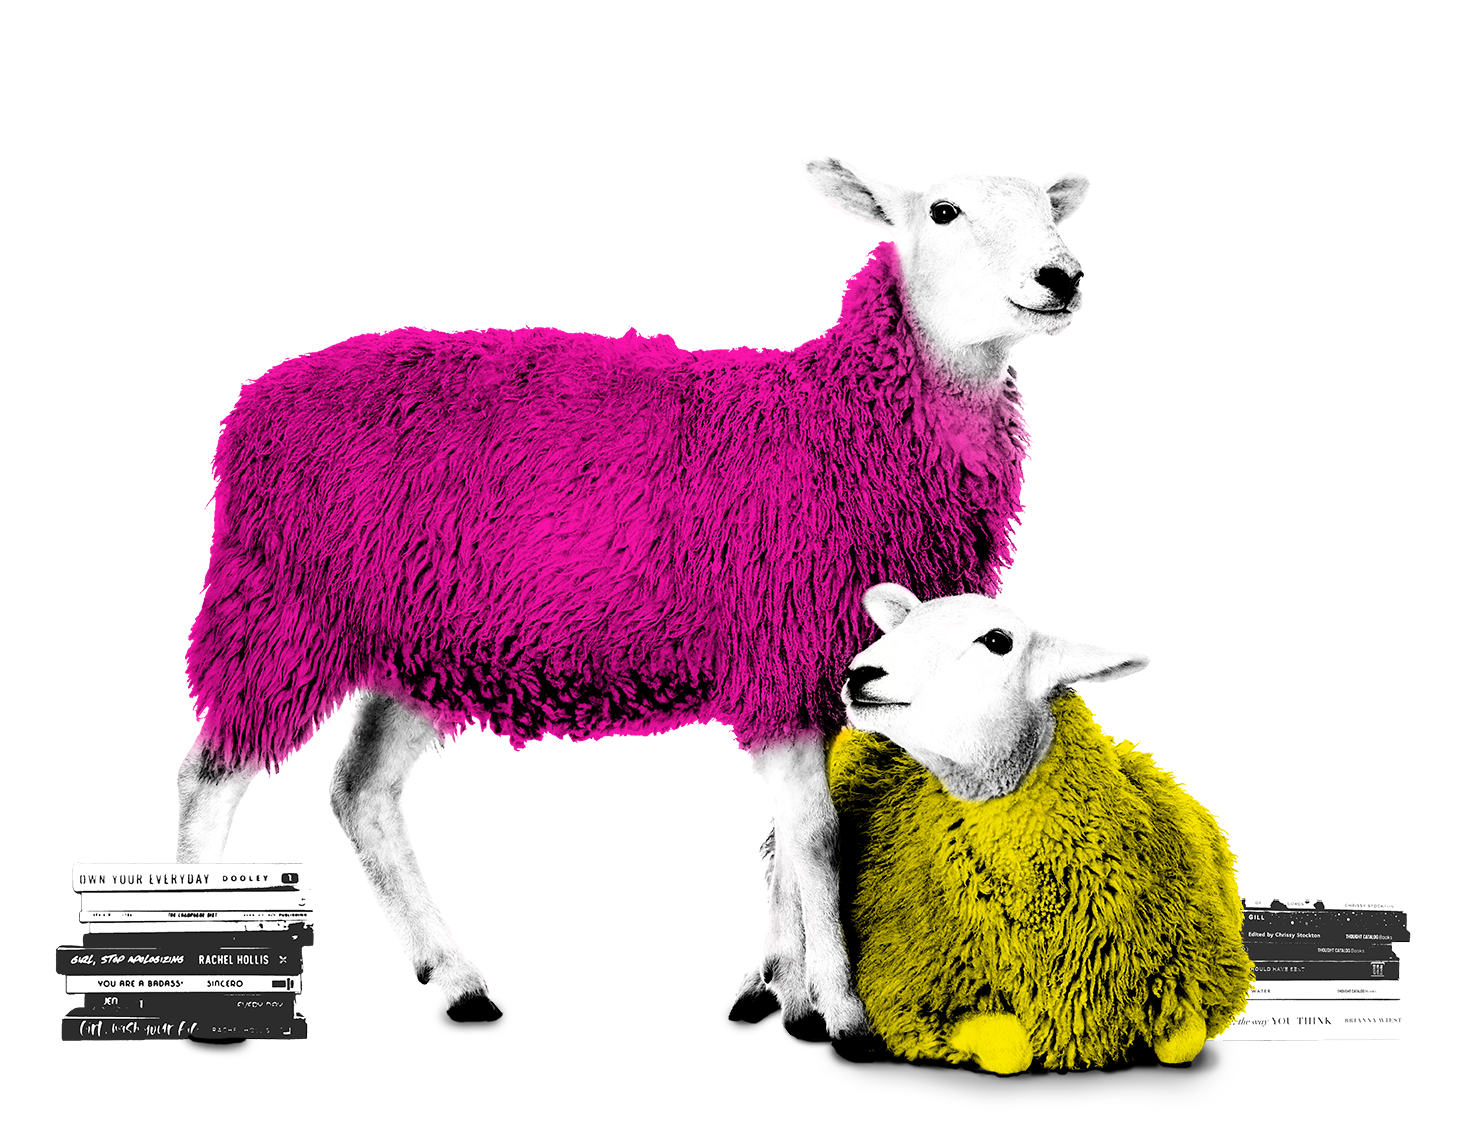 Dos ovejas, una de pie de color de rosa y otra tumbada de color amarillo junto con varios libros